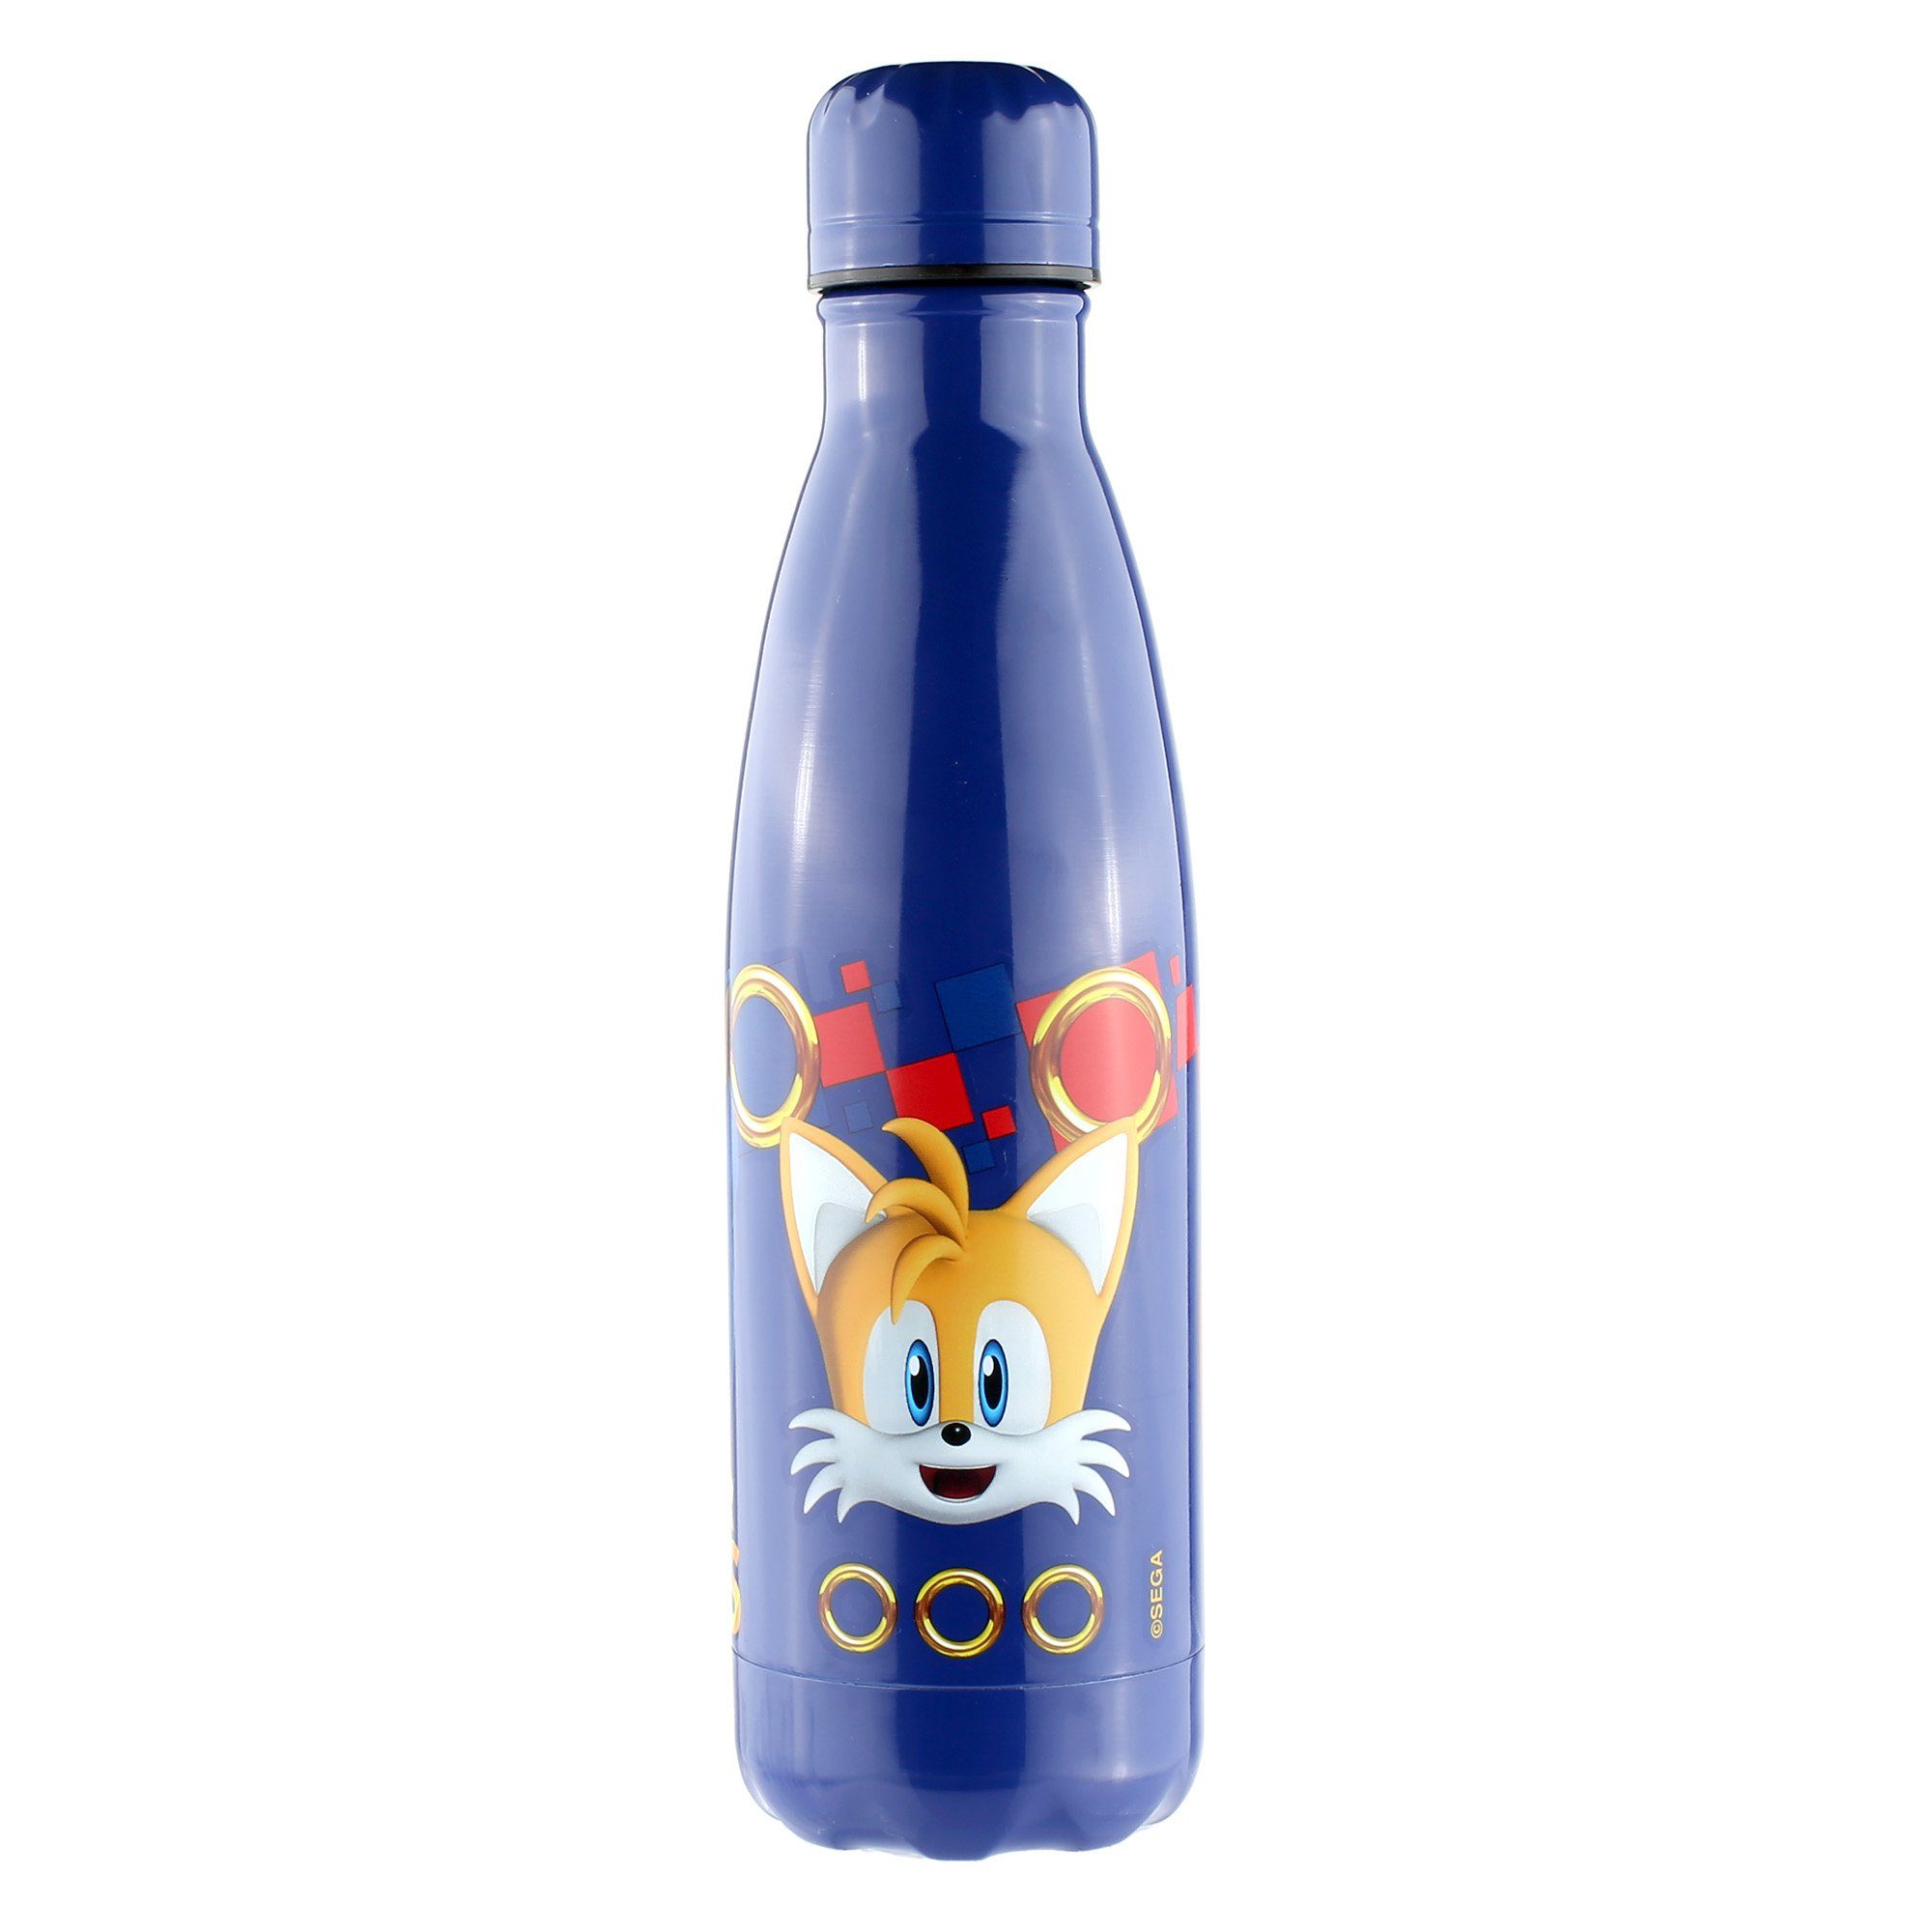 Sonic SEGA Blue Rot Water Wasserflasche Water / Bottle Bottle / Trinkflasche Blau Sonic